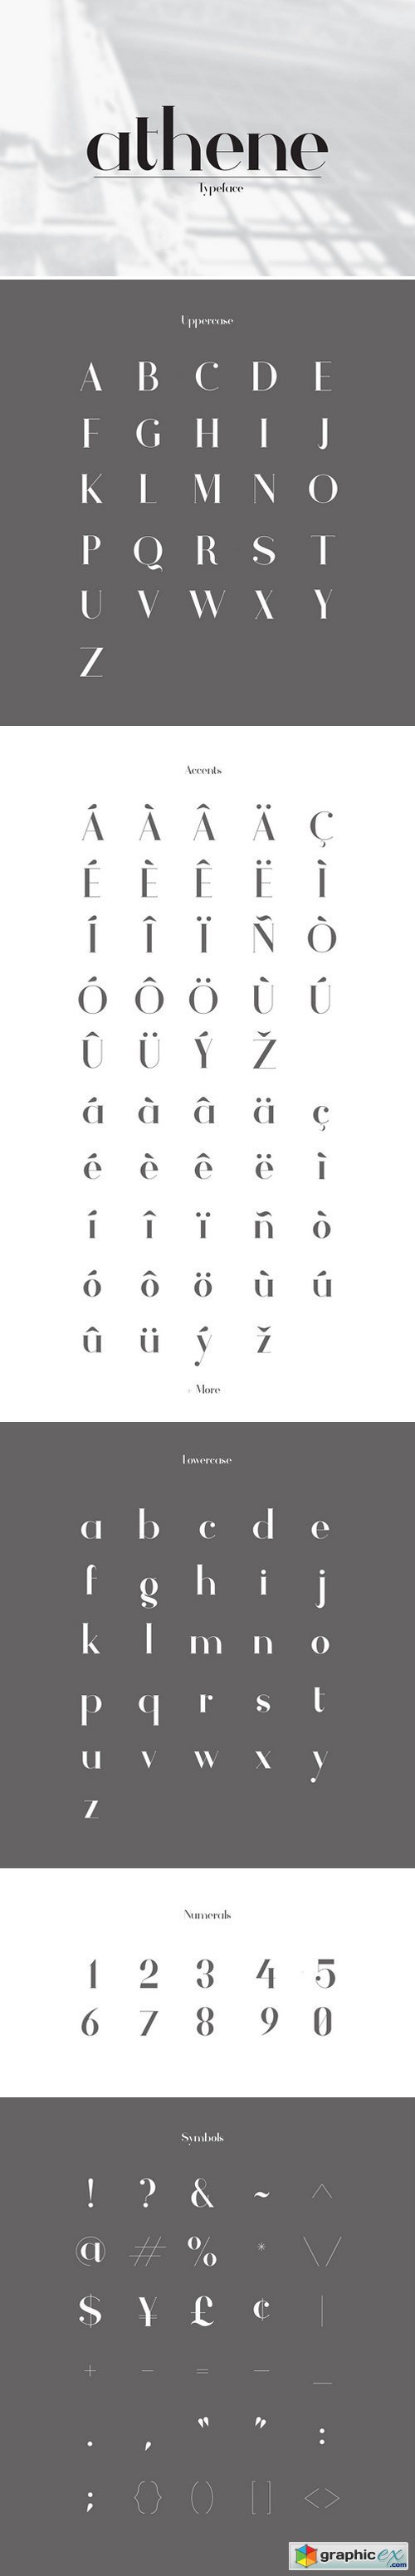 Athene Typeface